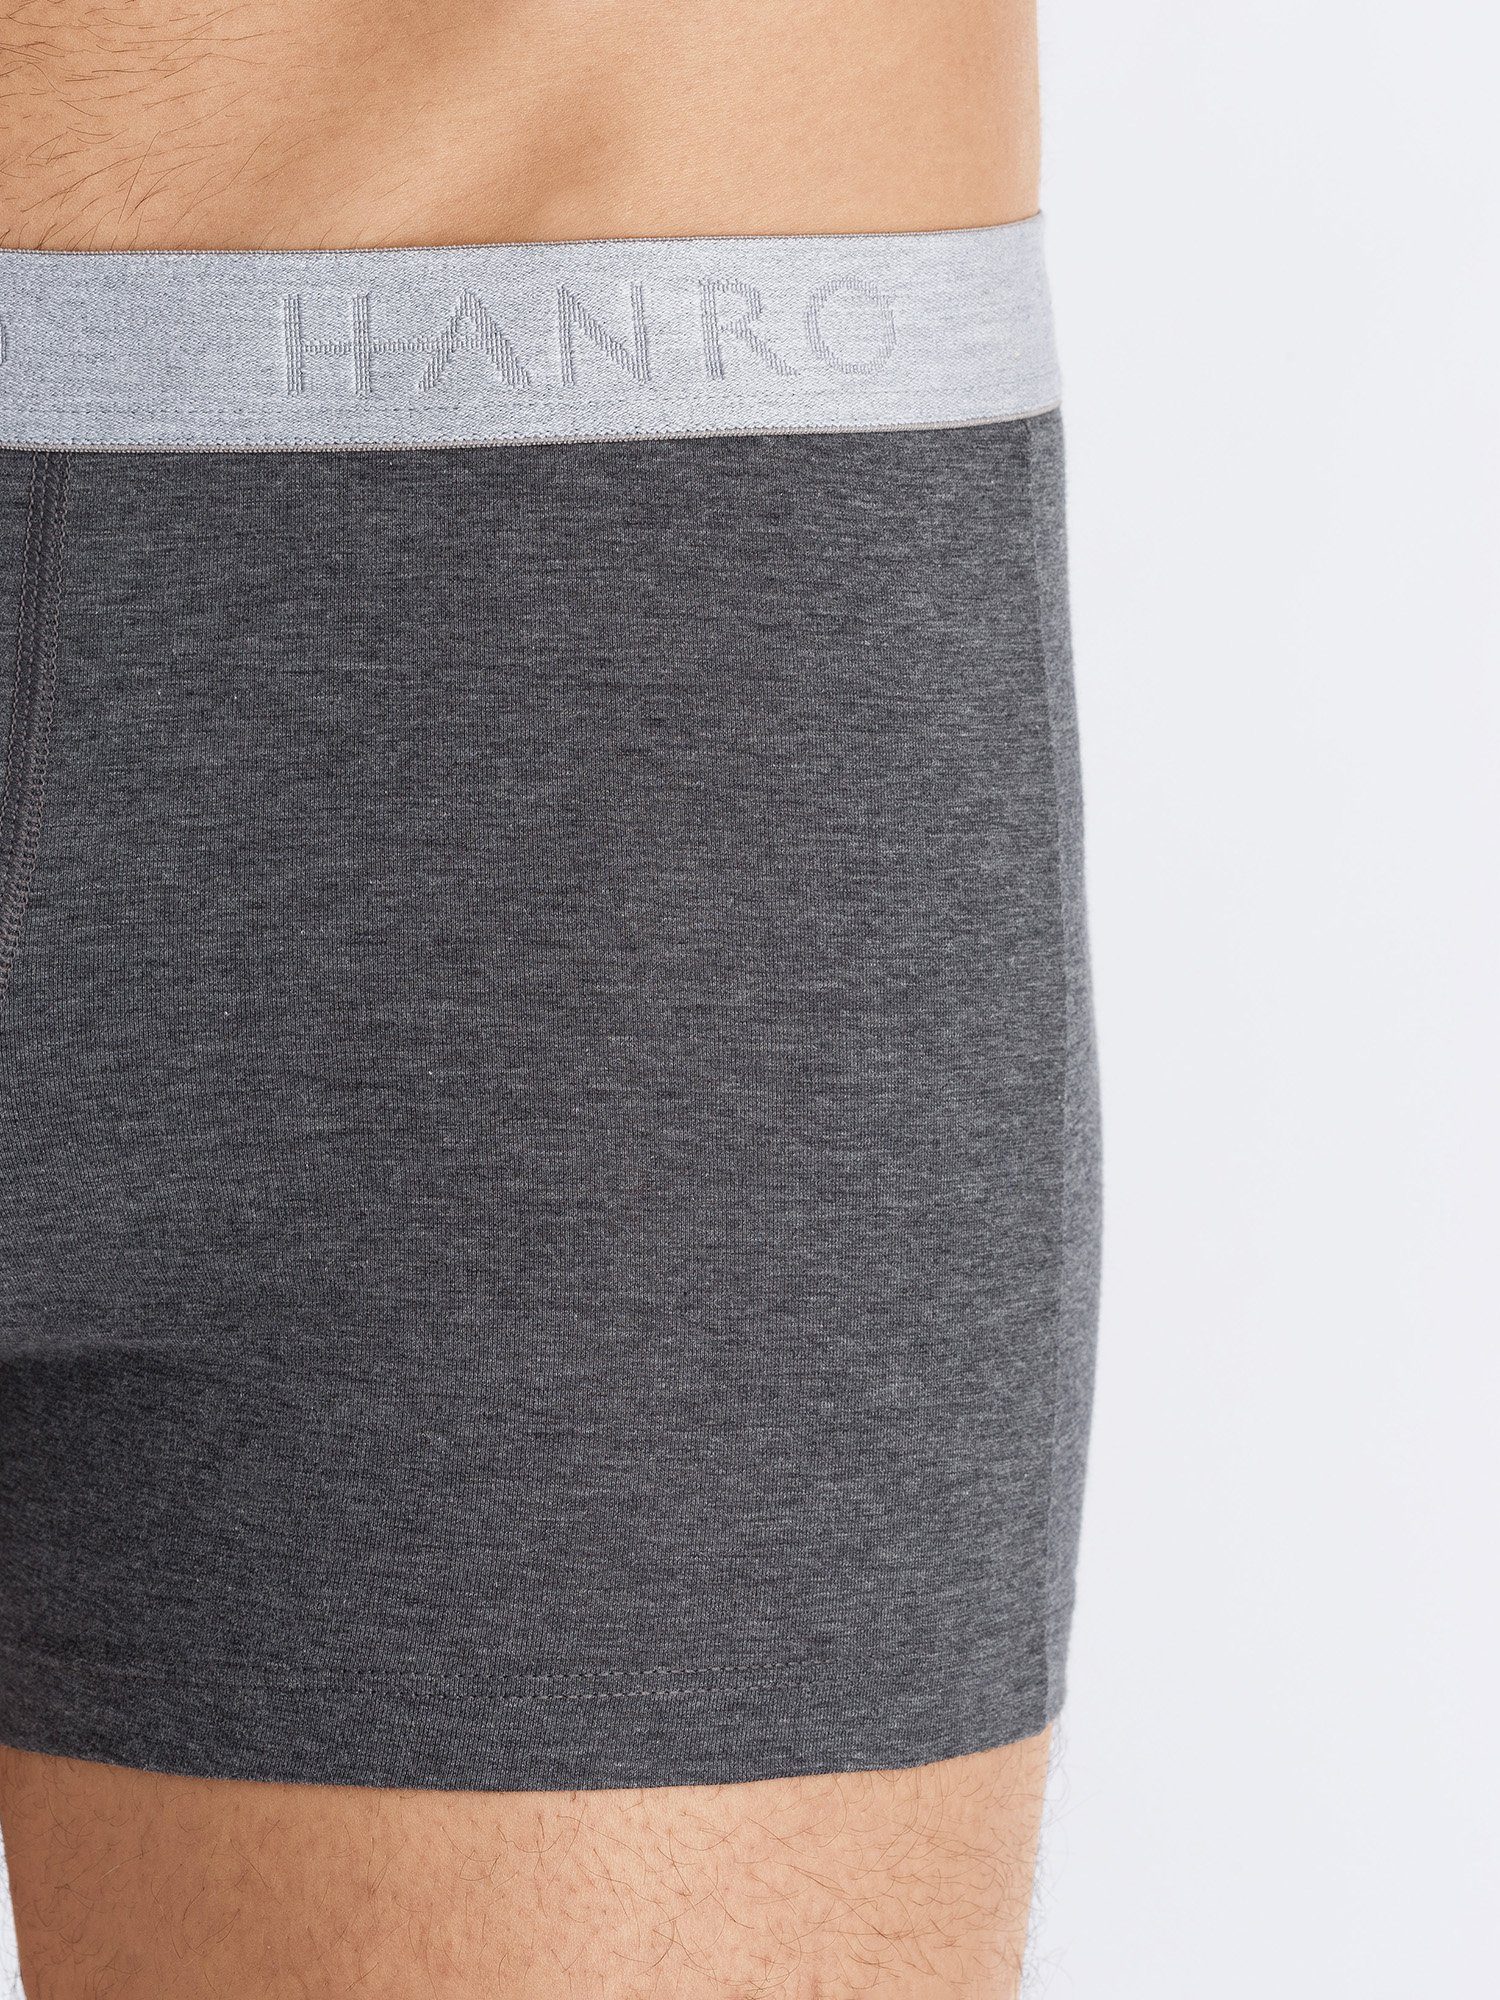 Hanro Retro Pants 2-Pack Cotton coal Essentials melange